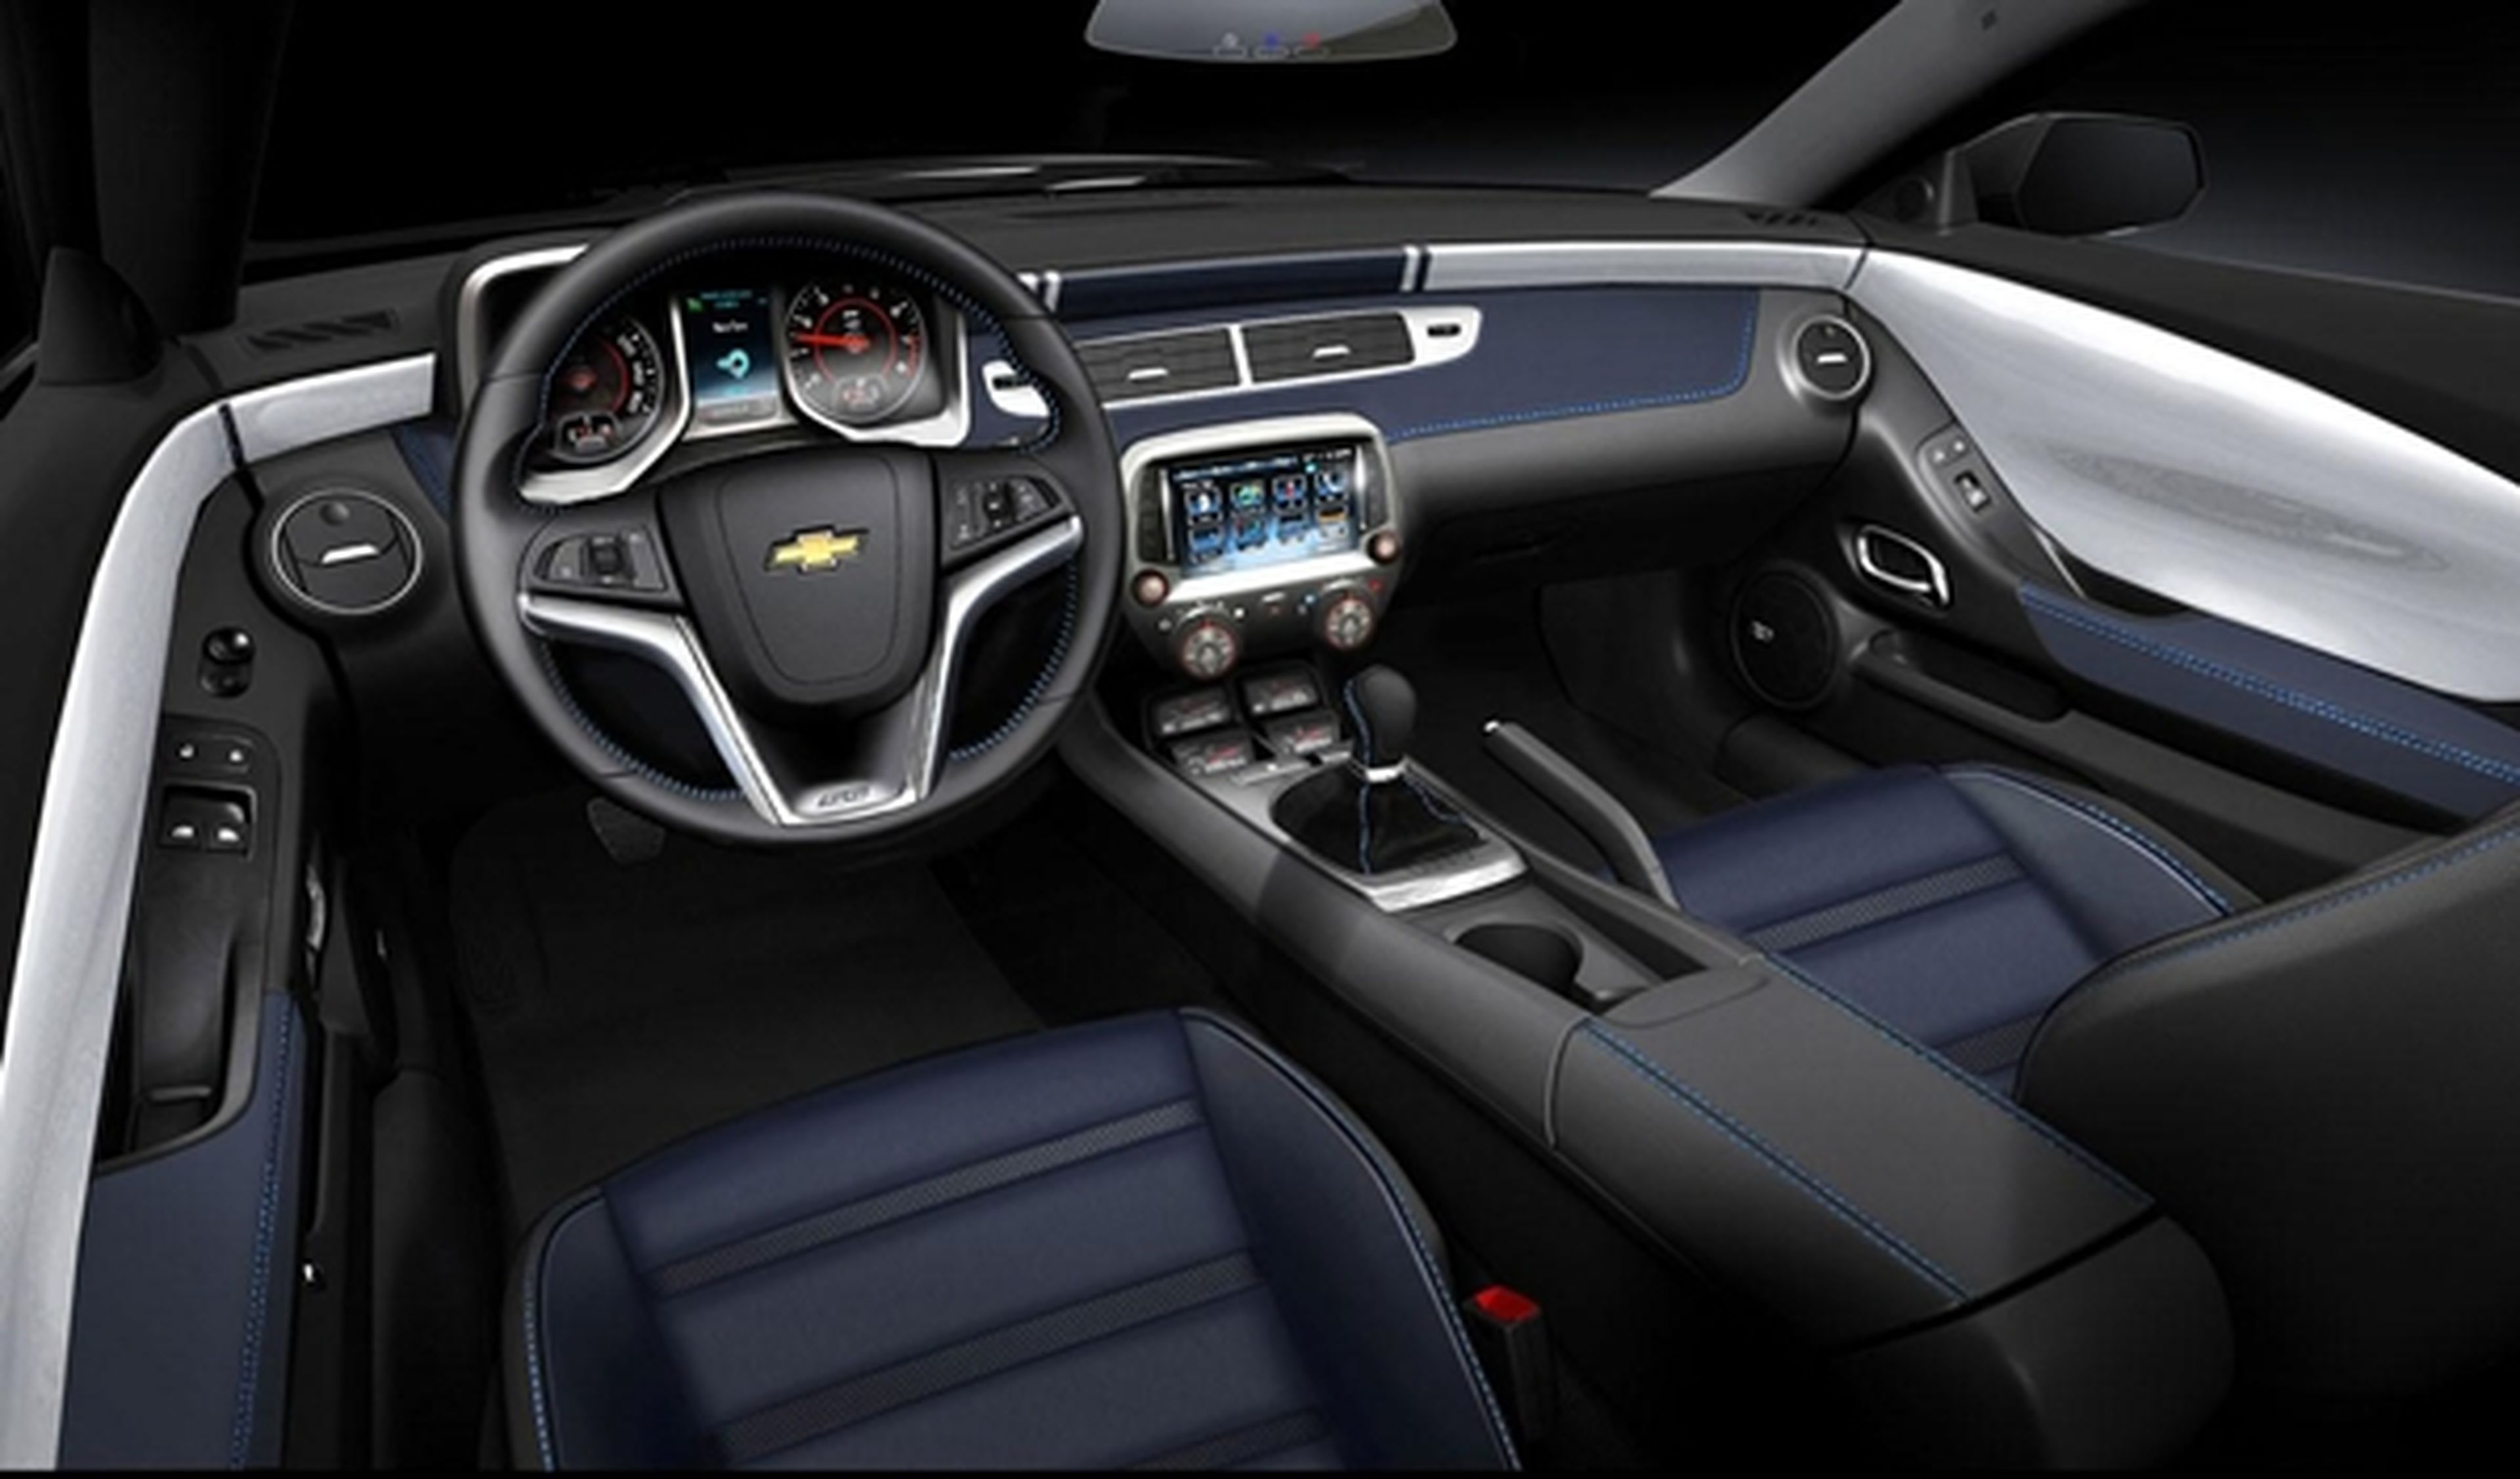 Chevrolet Camaro Spring Edition interior